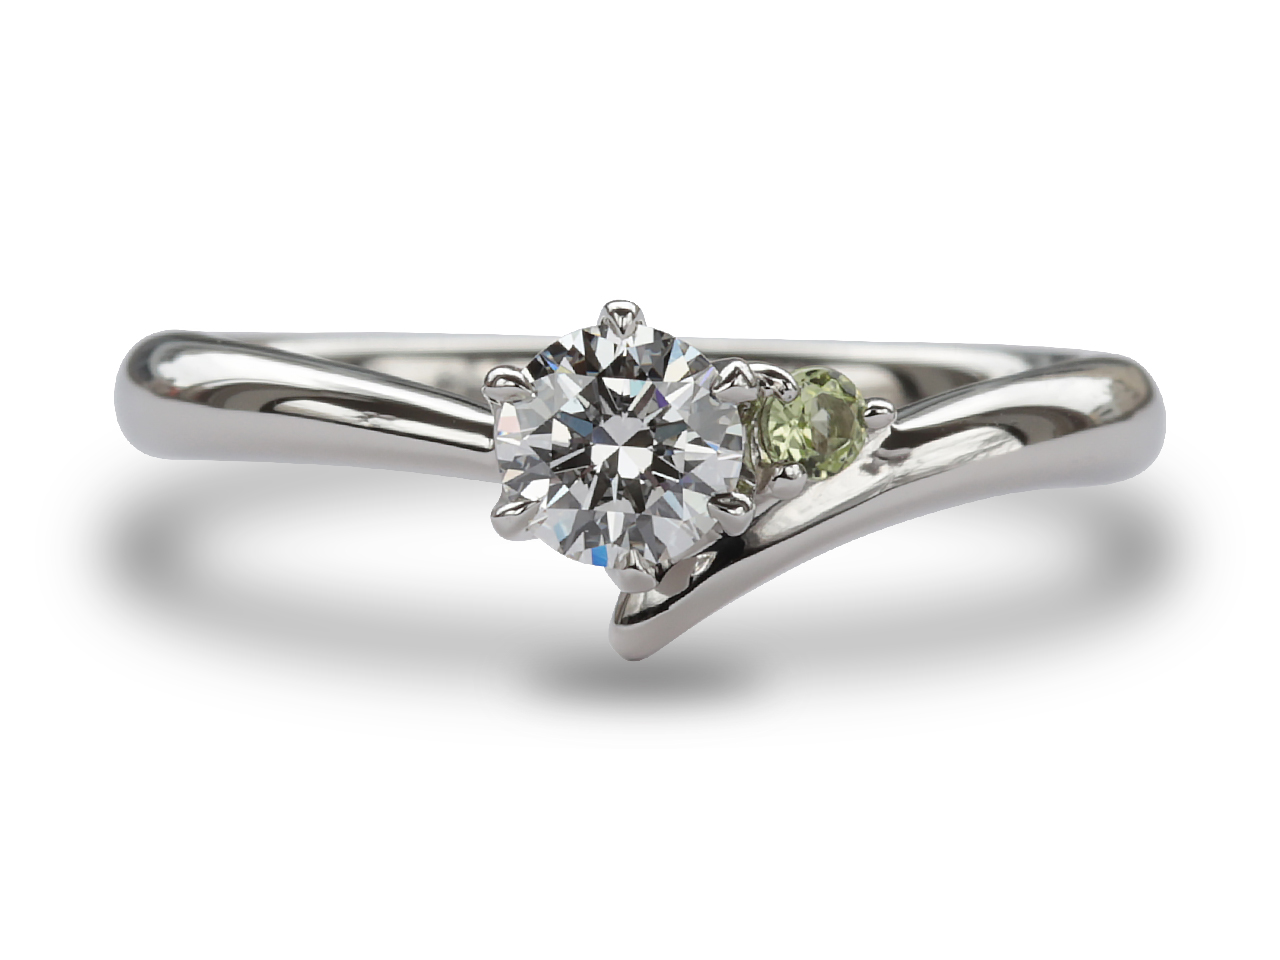 【12348話】輝くペリドットとダイヤモンド: カスタム婚約指輪の魅力